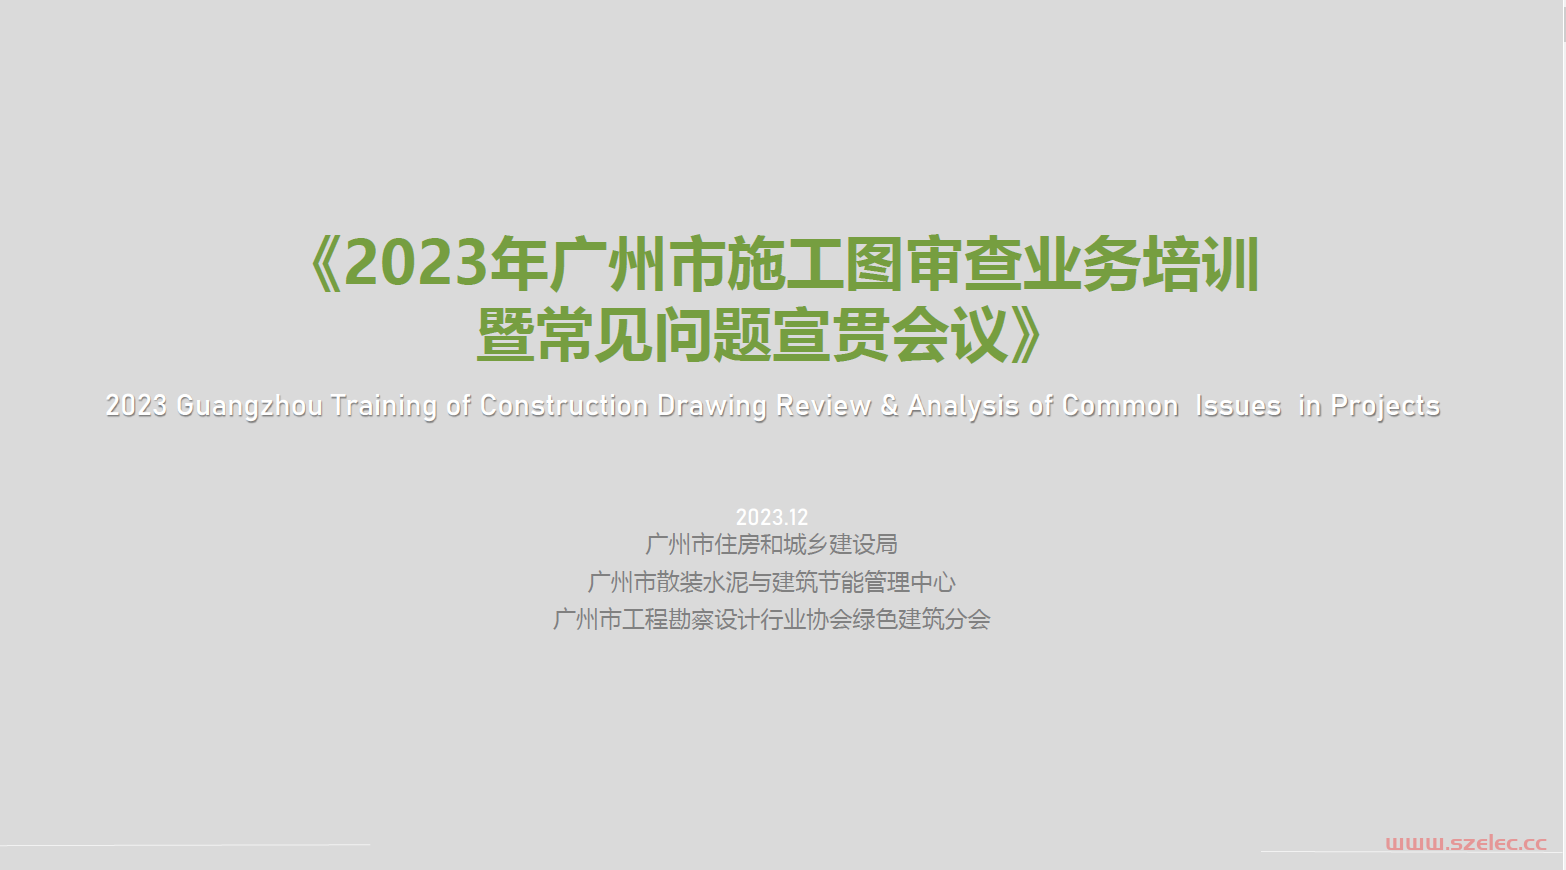 4电气-20231208施工图审查常见质量问题培训（广州）